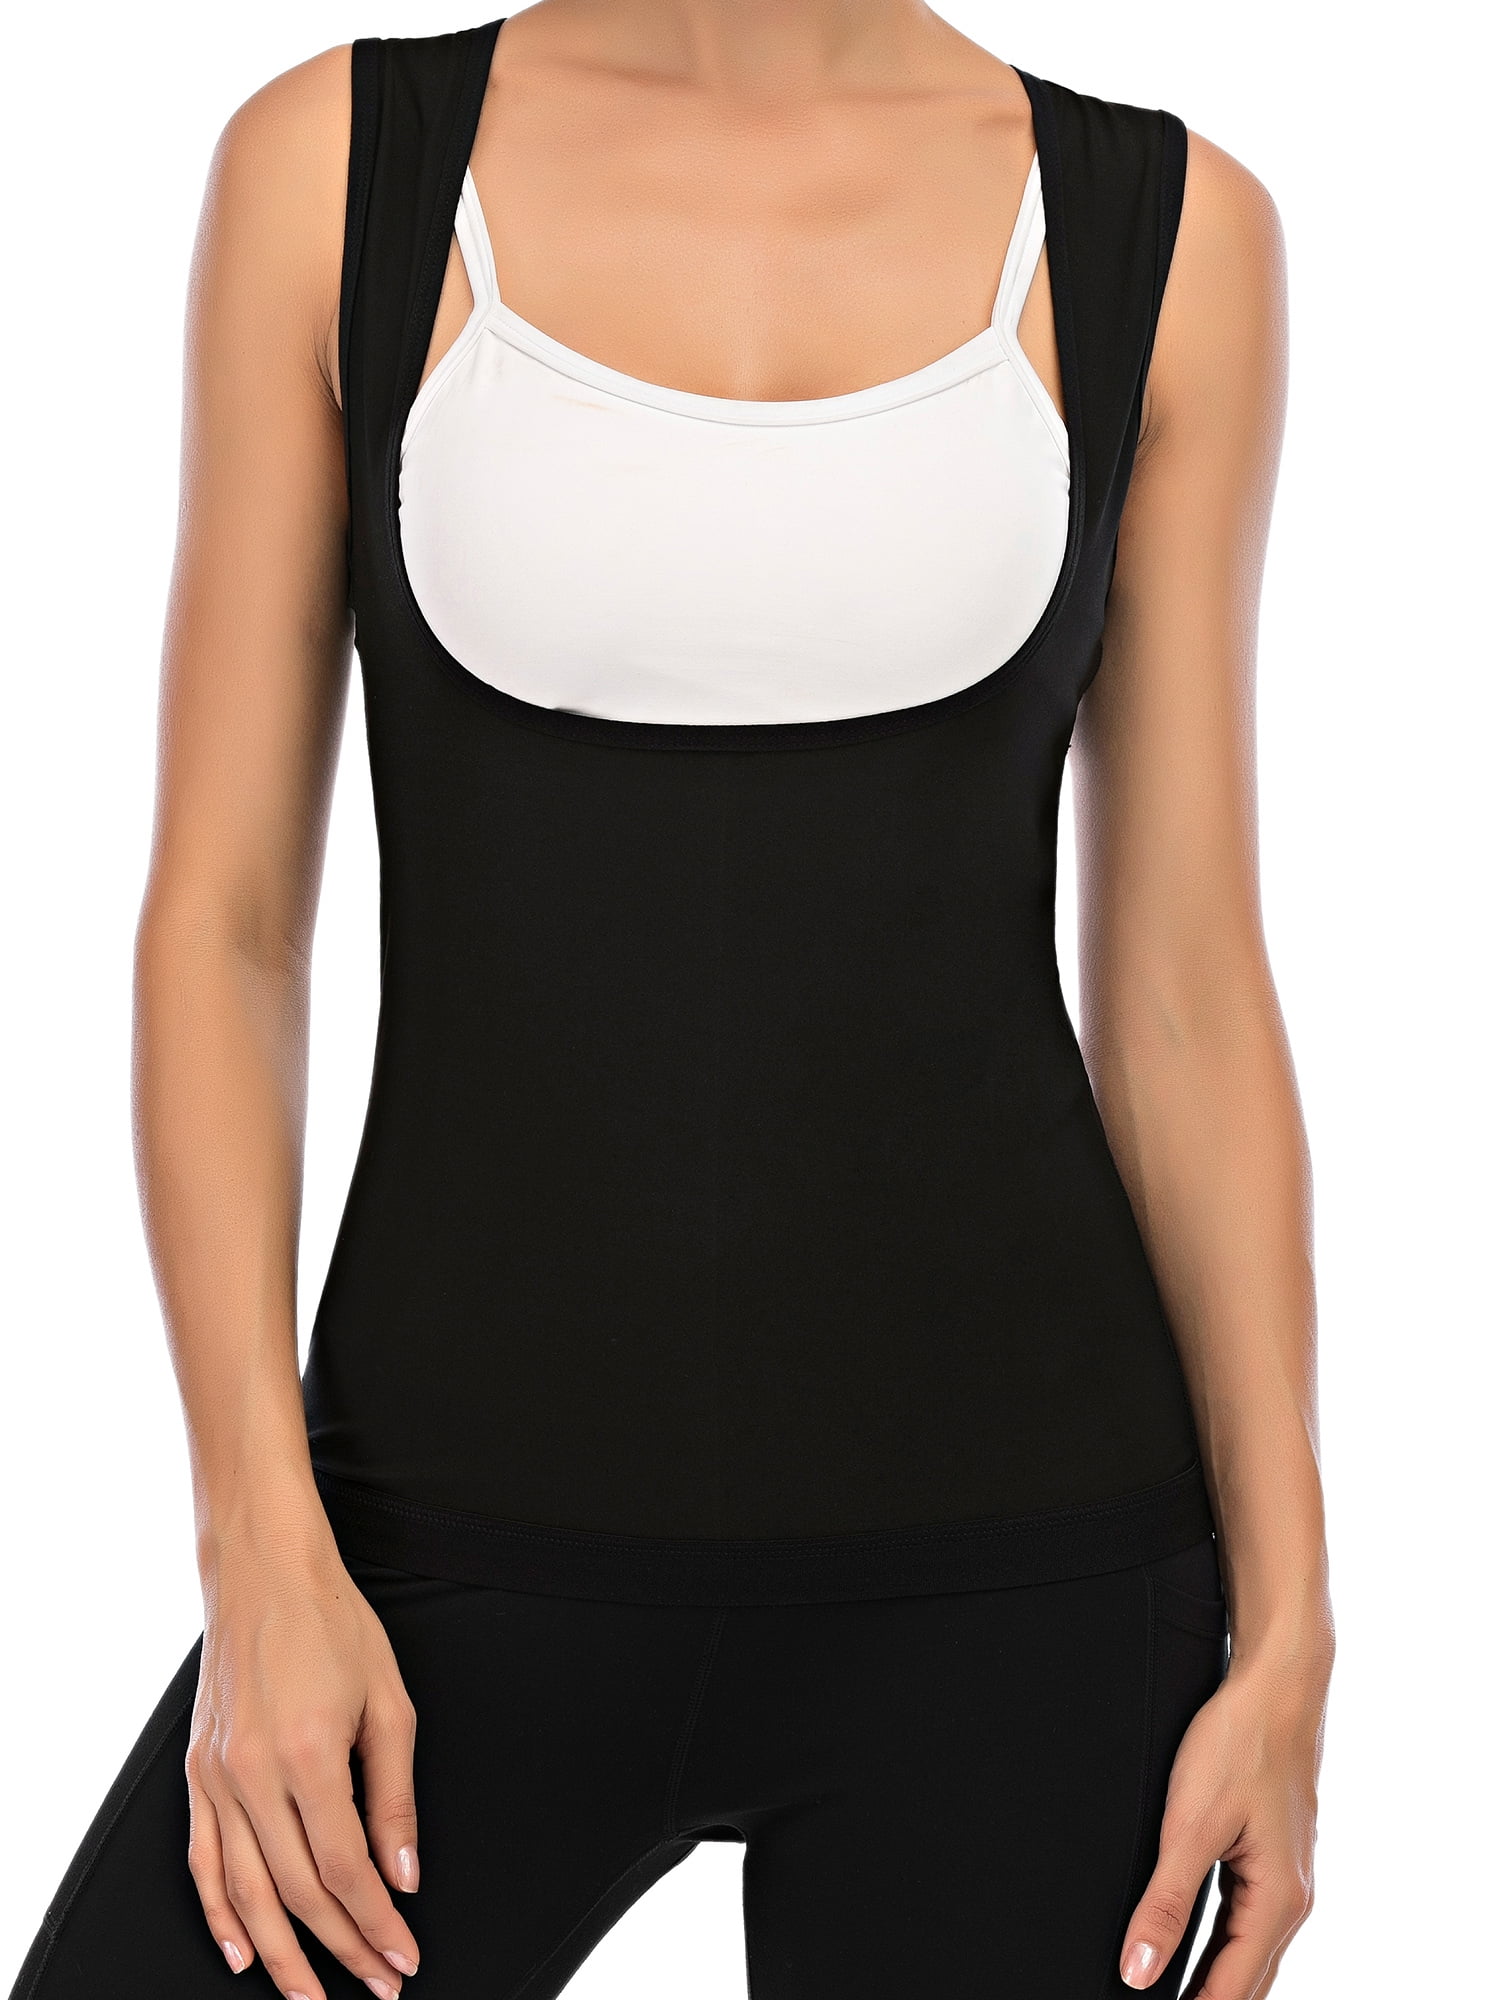 SHCKE Women Body Shaper Slimming Shirt Tummy Vest Thermal